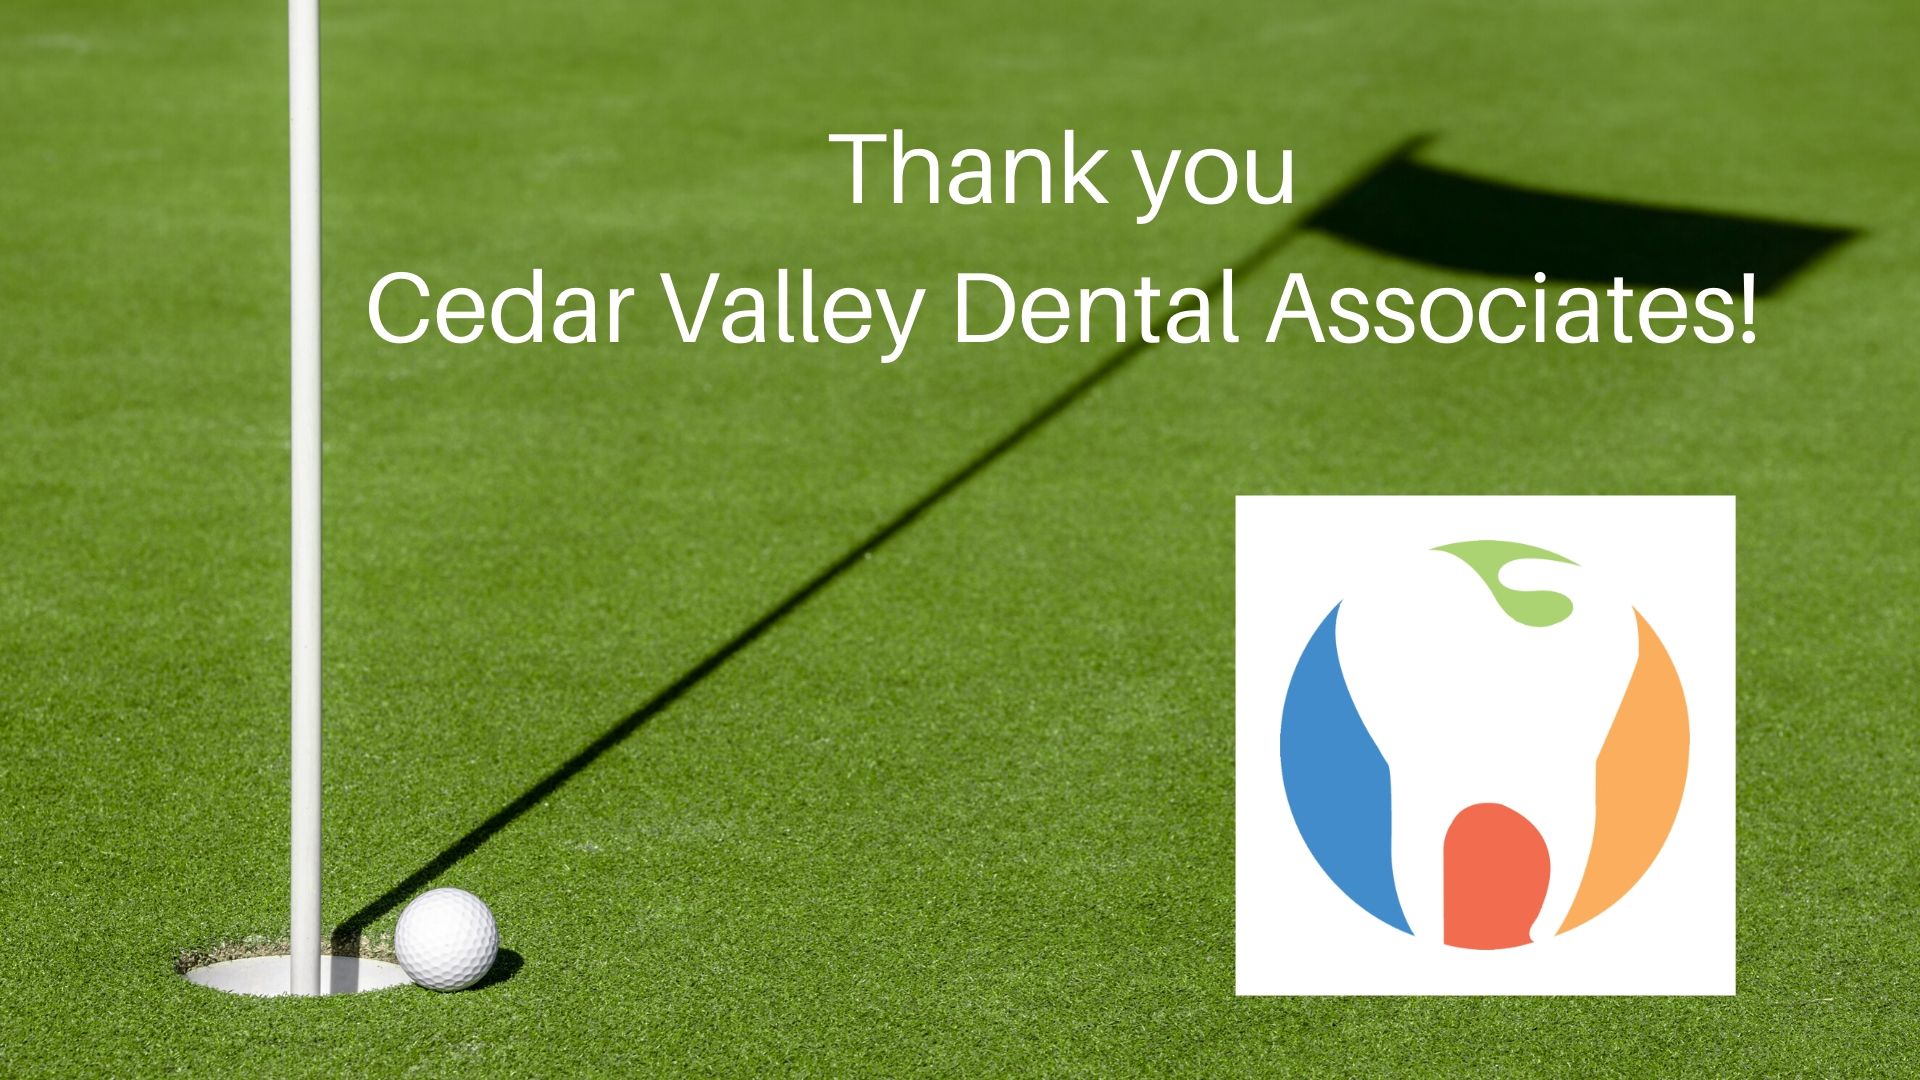 Cedar Valley Dental Associates